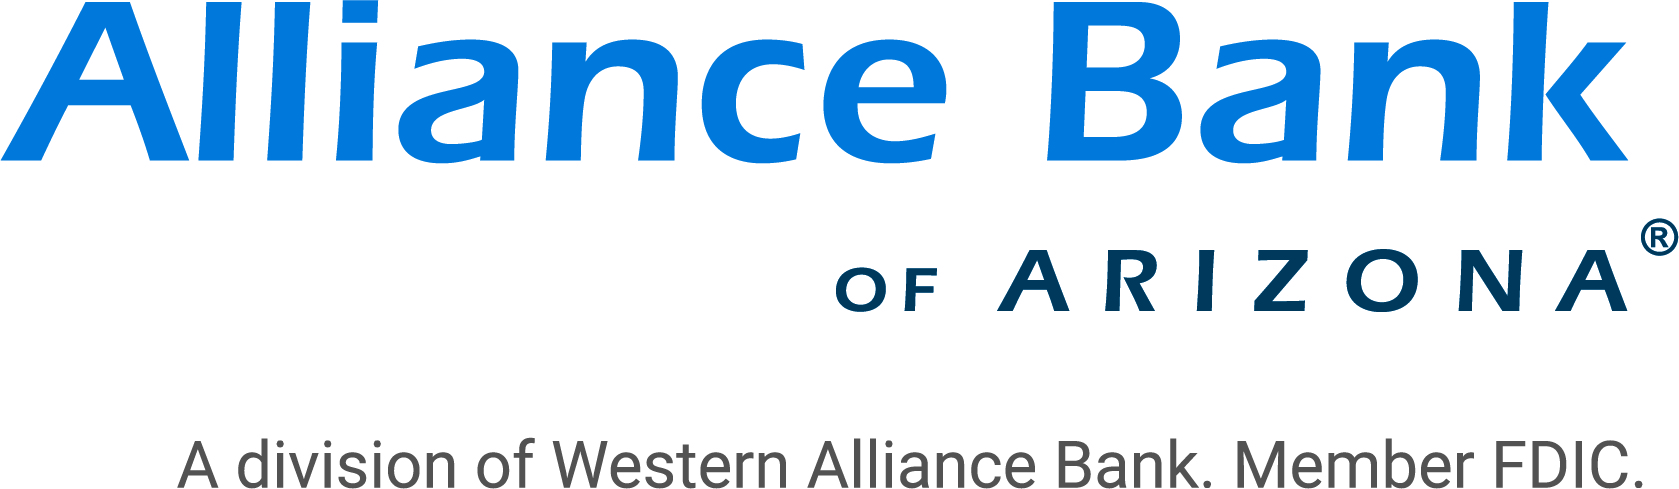 6. Alliance Bank of Arizona (Flor naranja)